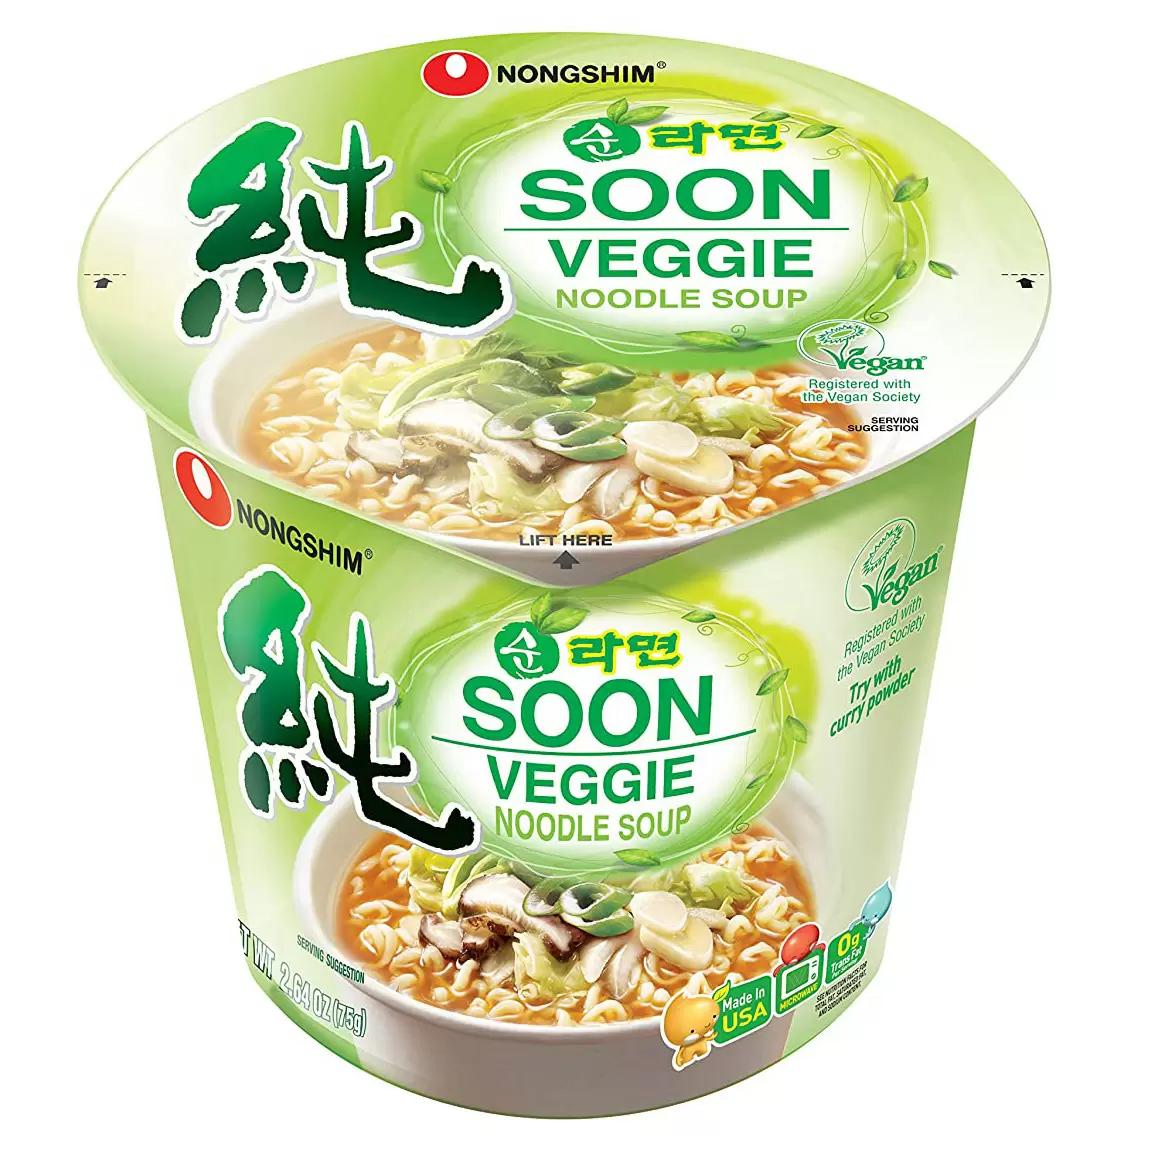 6 Nongshim Soon Cup Veggie Noodle Soup for $5.88